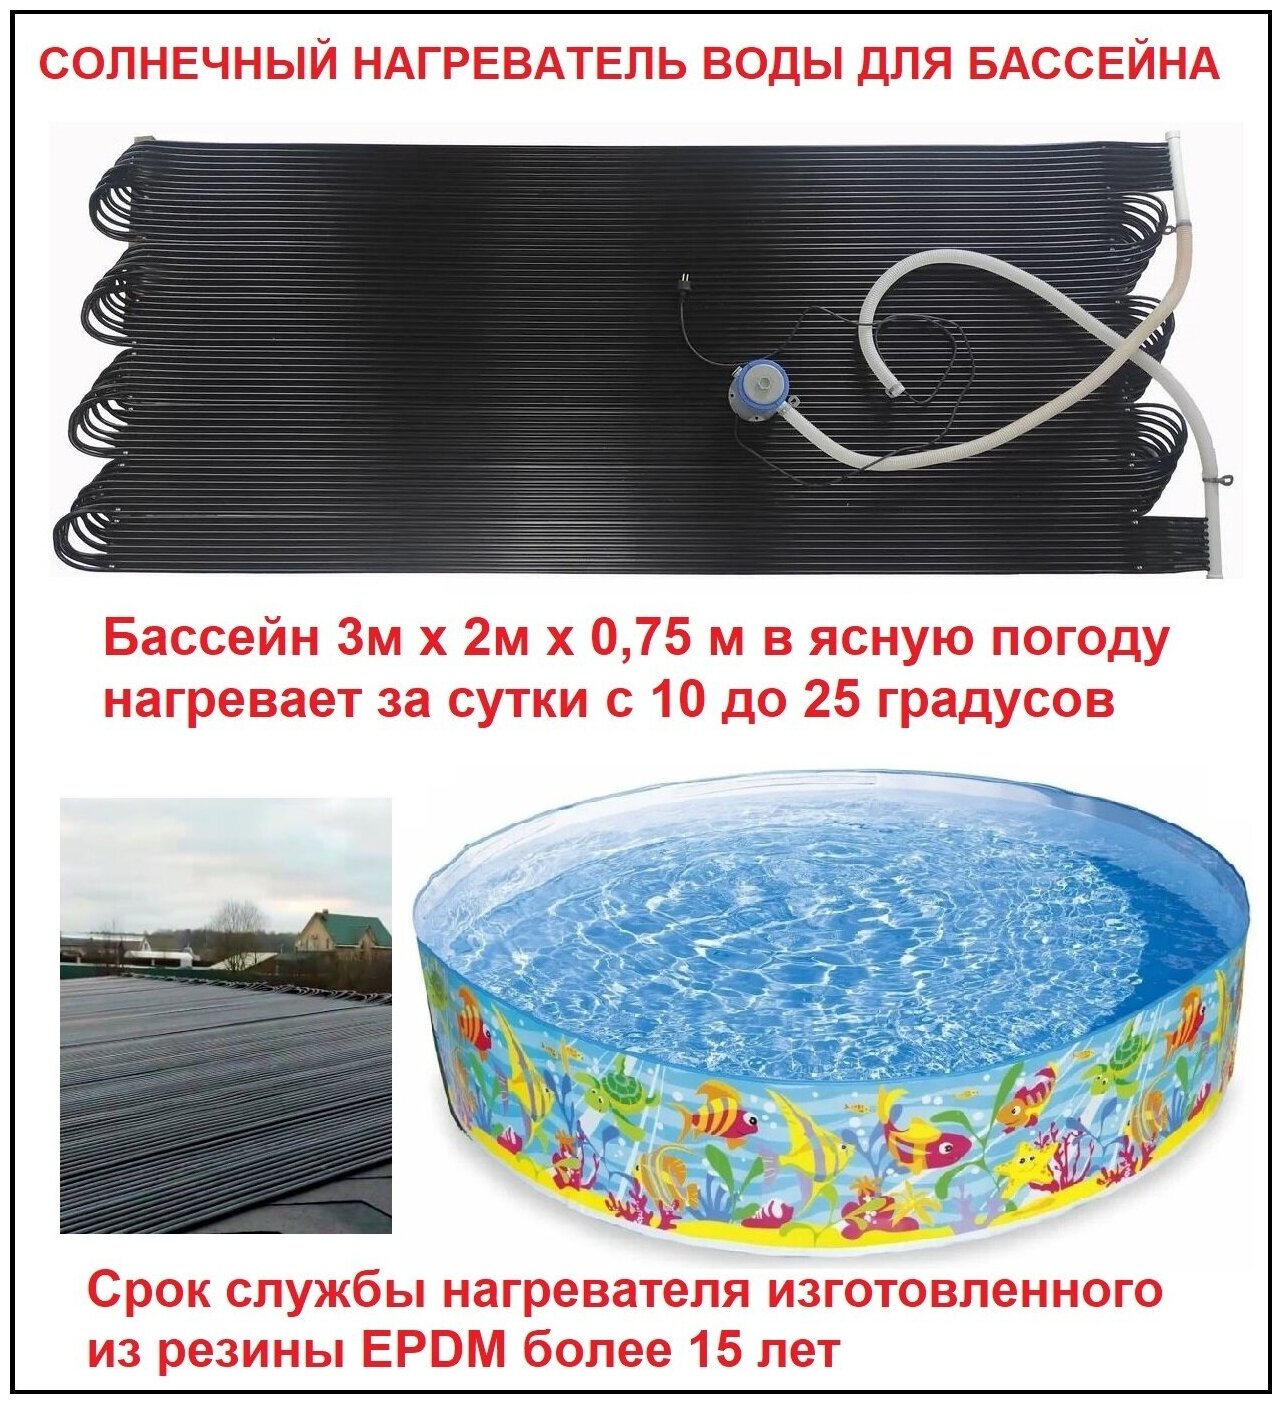 Солнечный нагреватель воды для бассейна солнечный водонагреватель - 1 штука